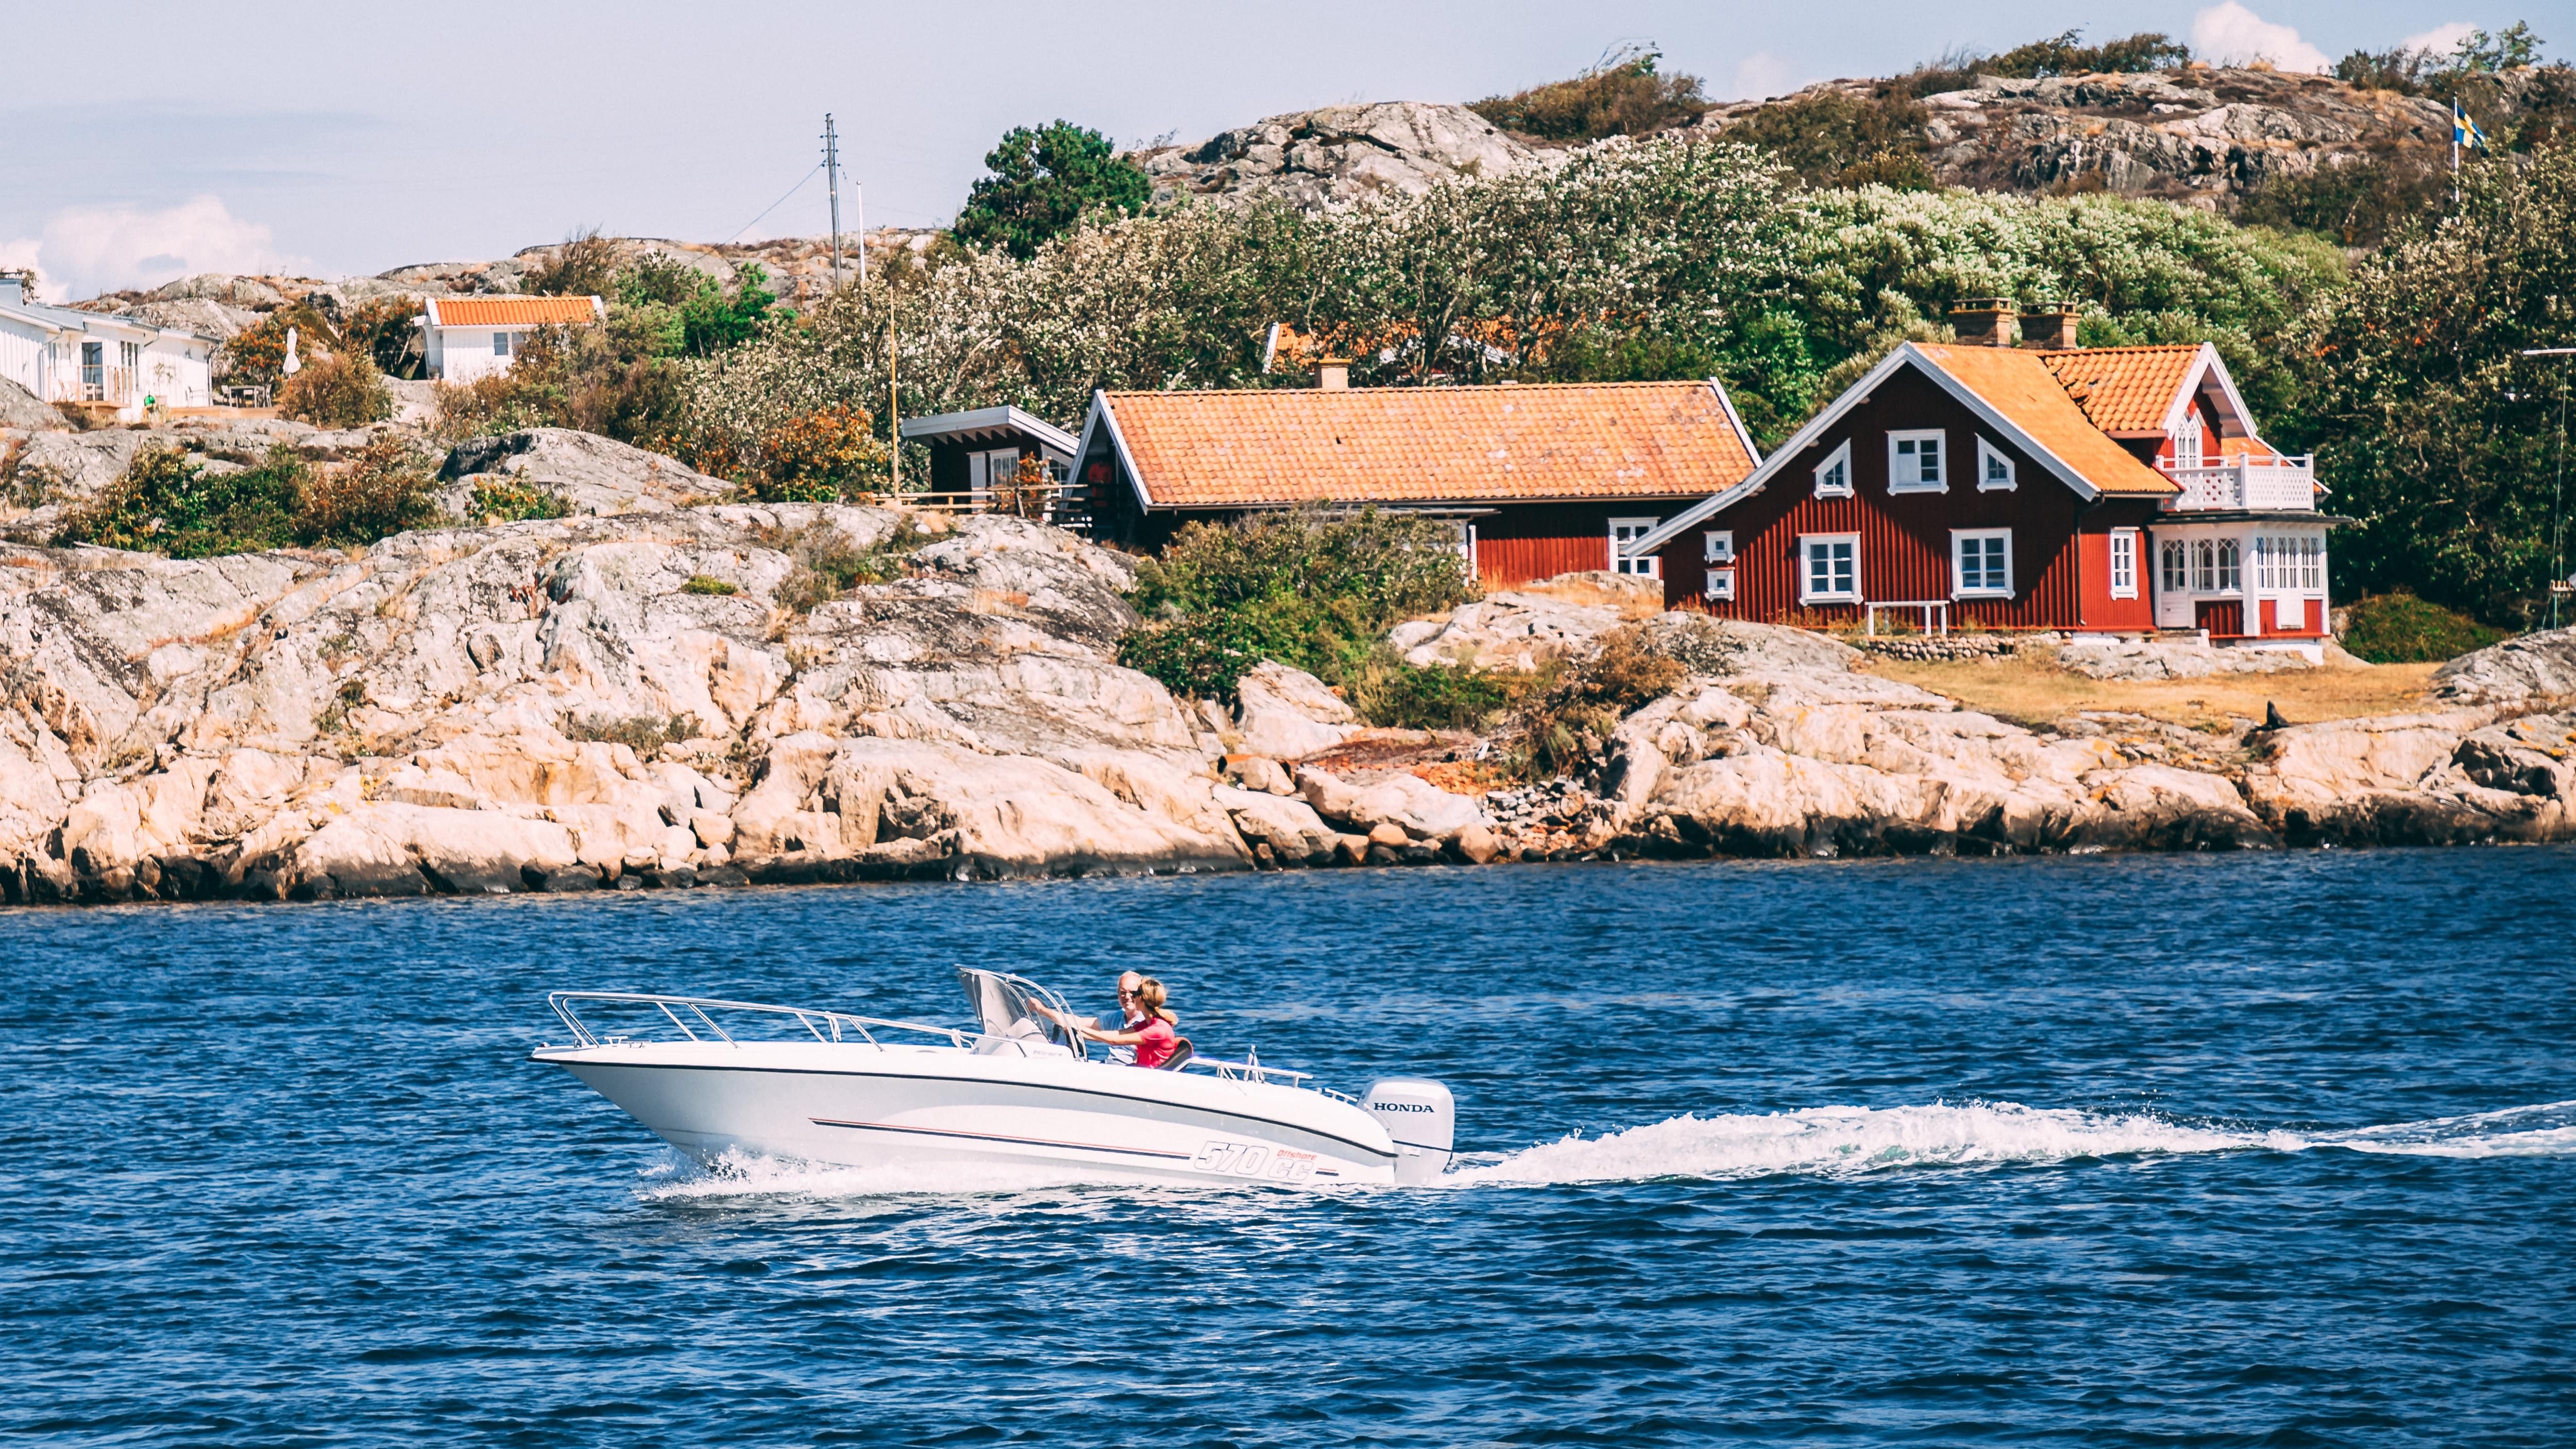 Hyr hus på Gotland för mer frihet på solsemestern